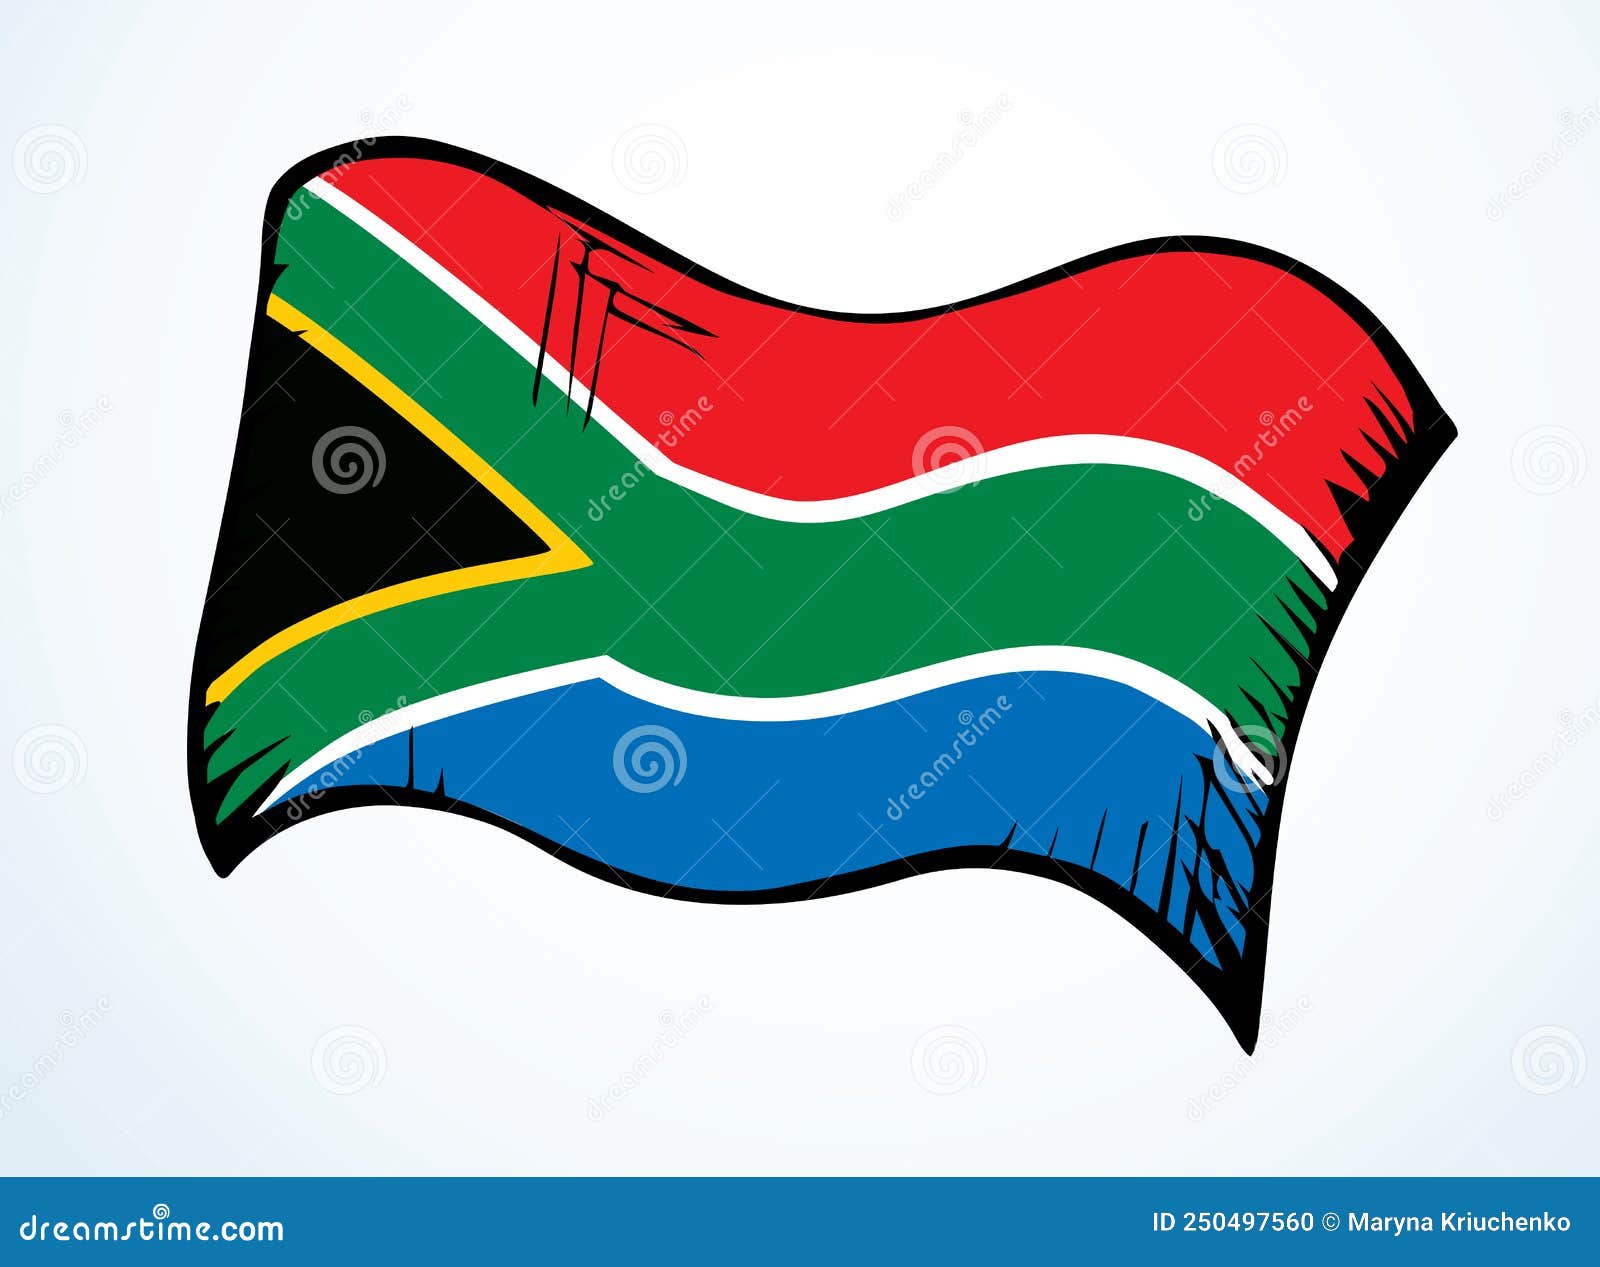 Drapeau Afrique Du Sud Dessin - Image gratuite sur Pixabay - Pixabay